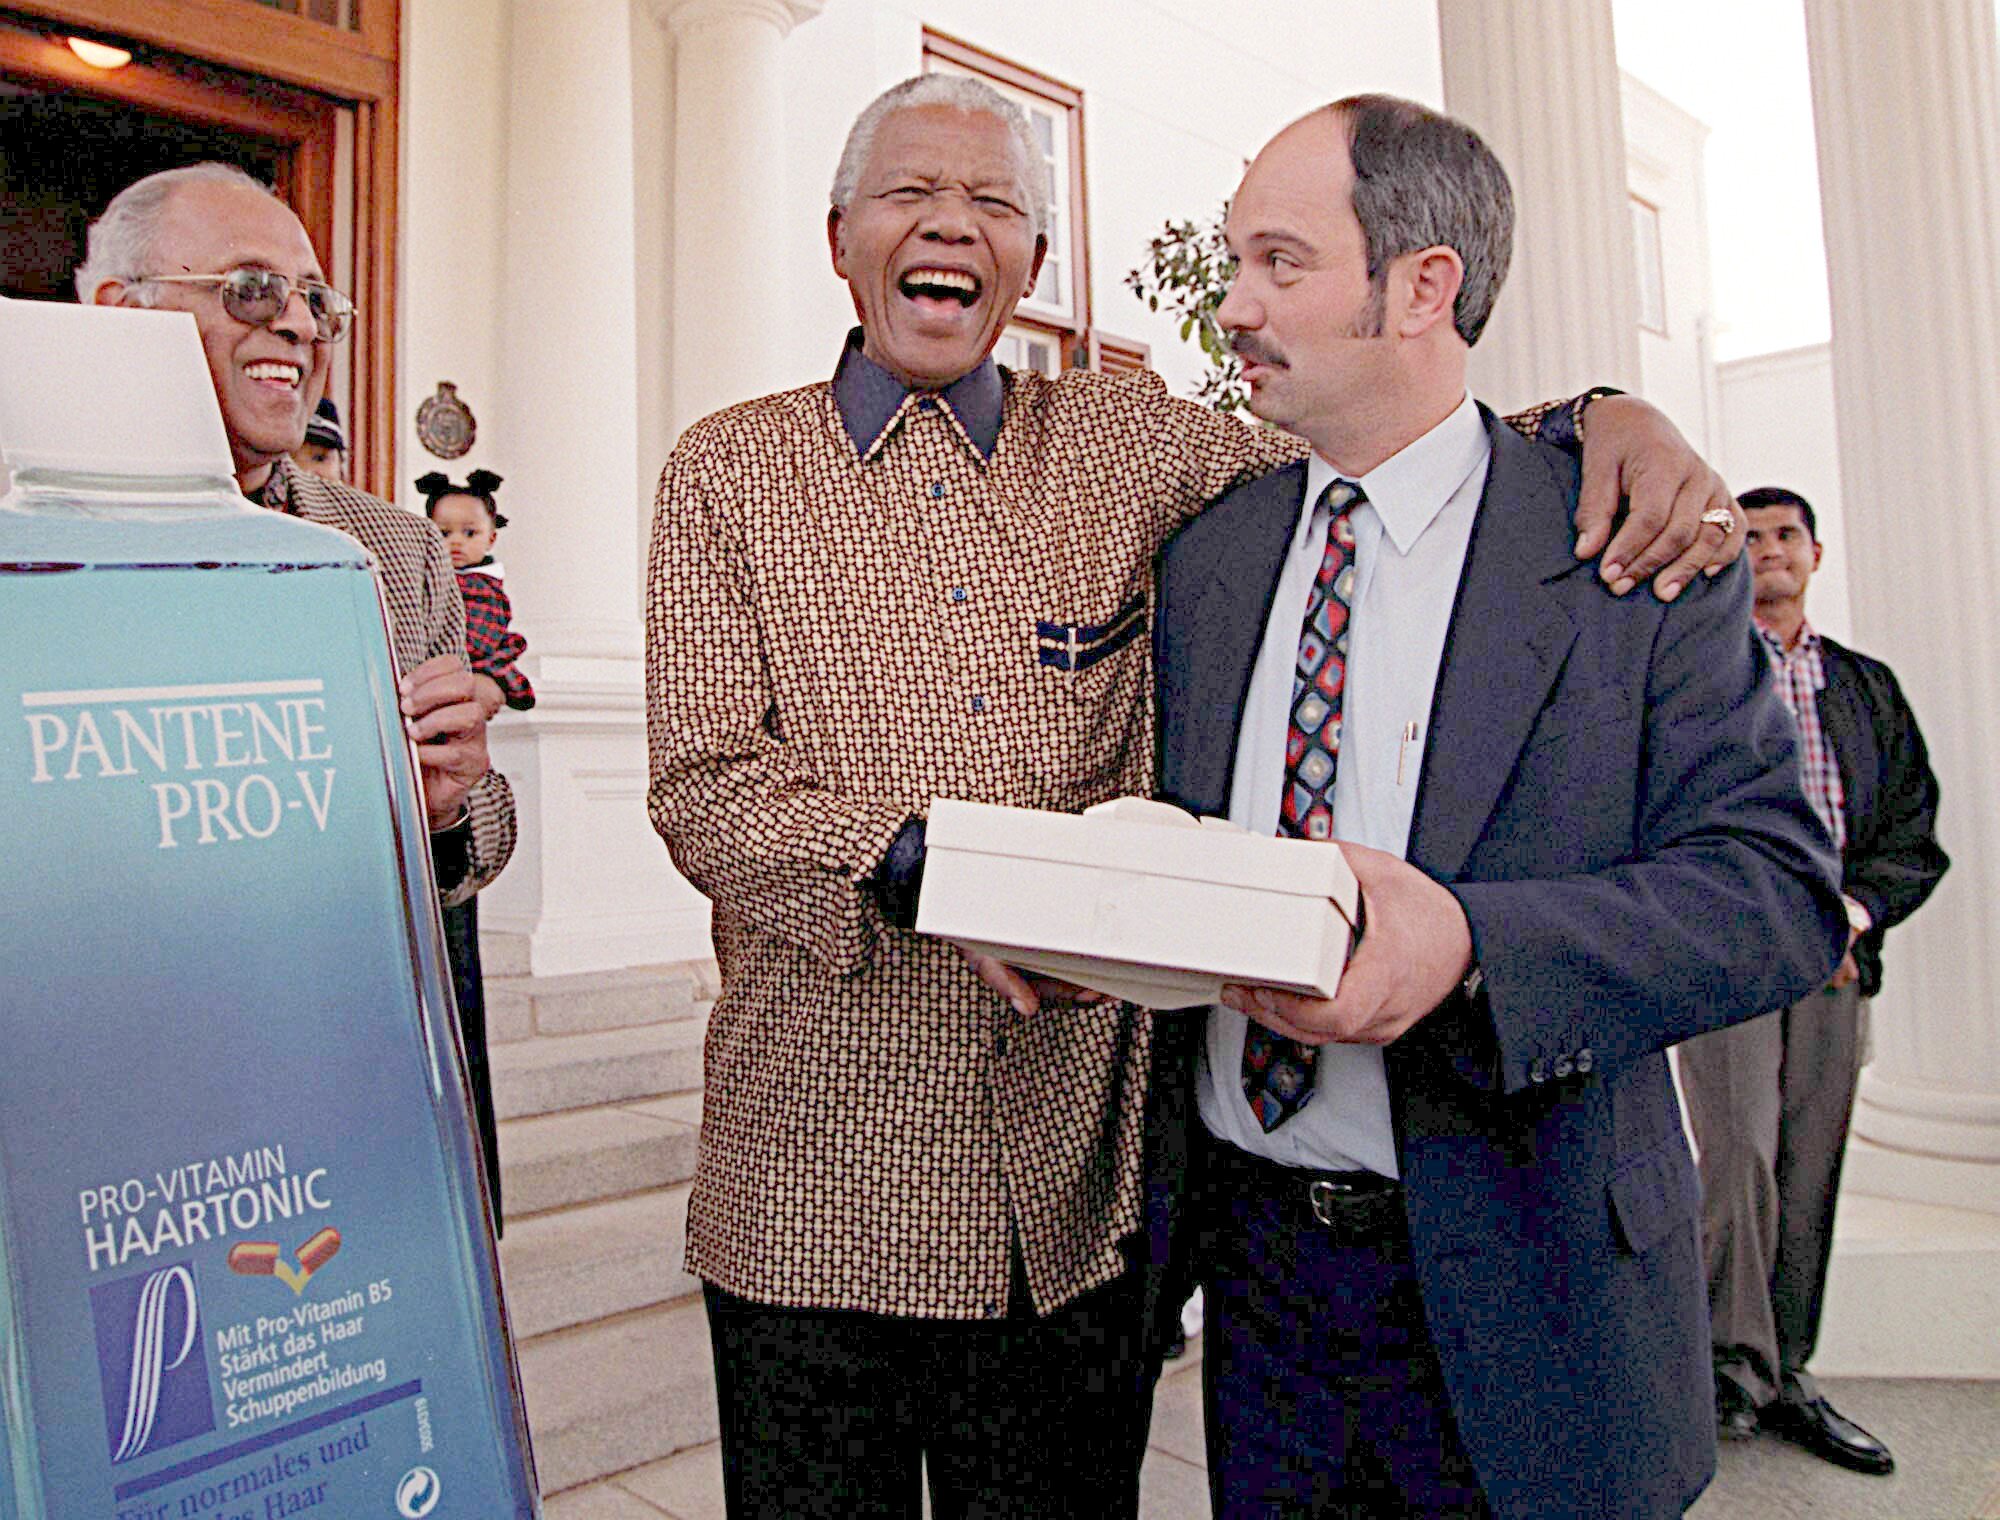 1998 skrattar Mandela tillsammans med sin före detta fängelsevakt.